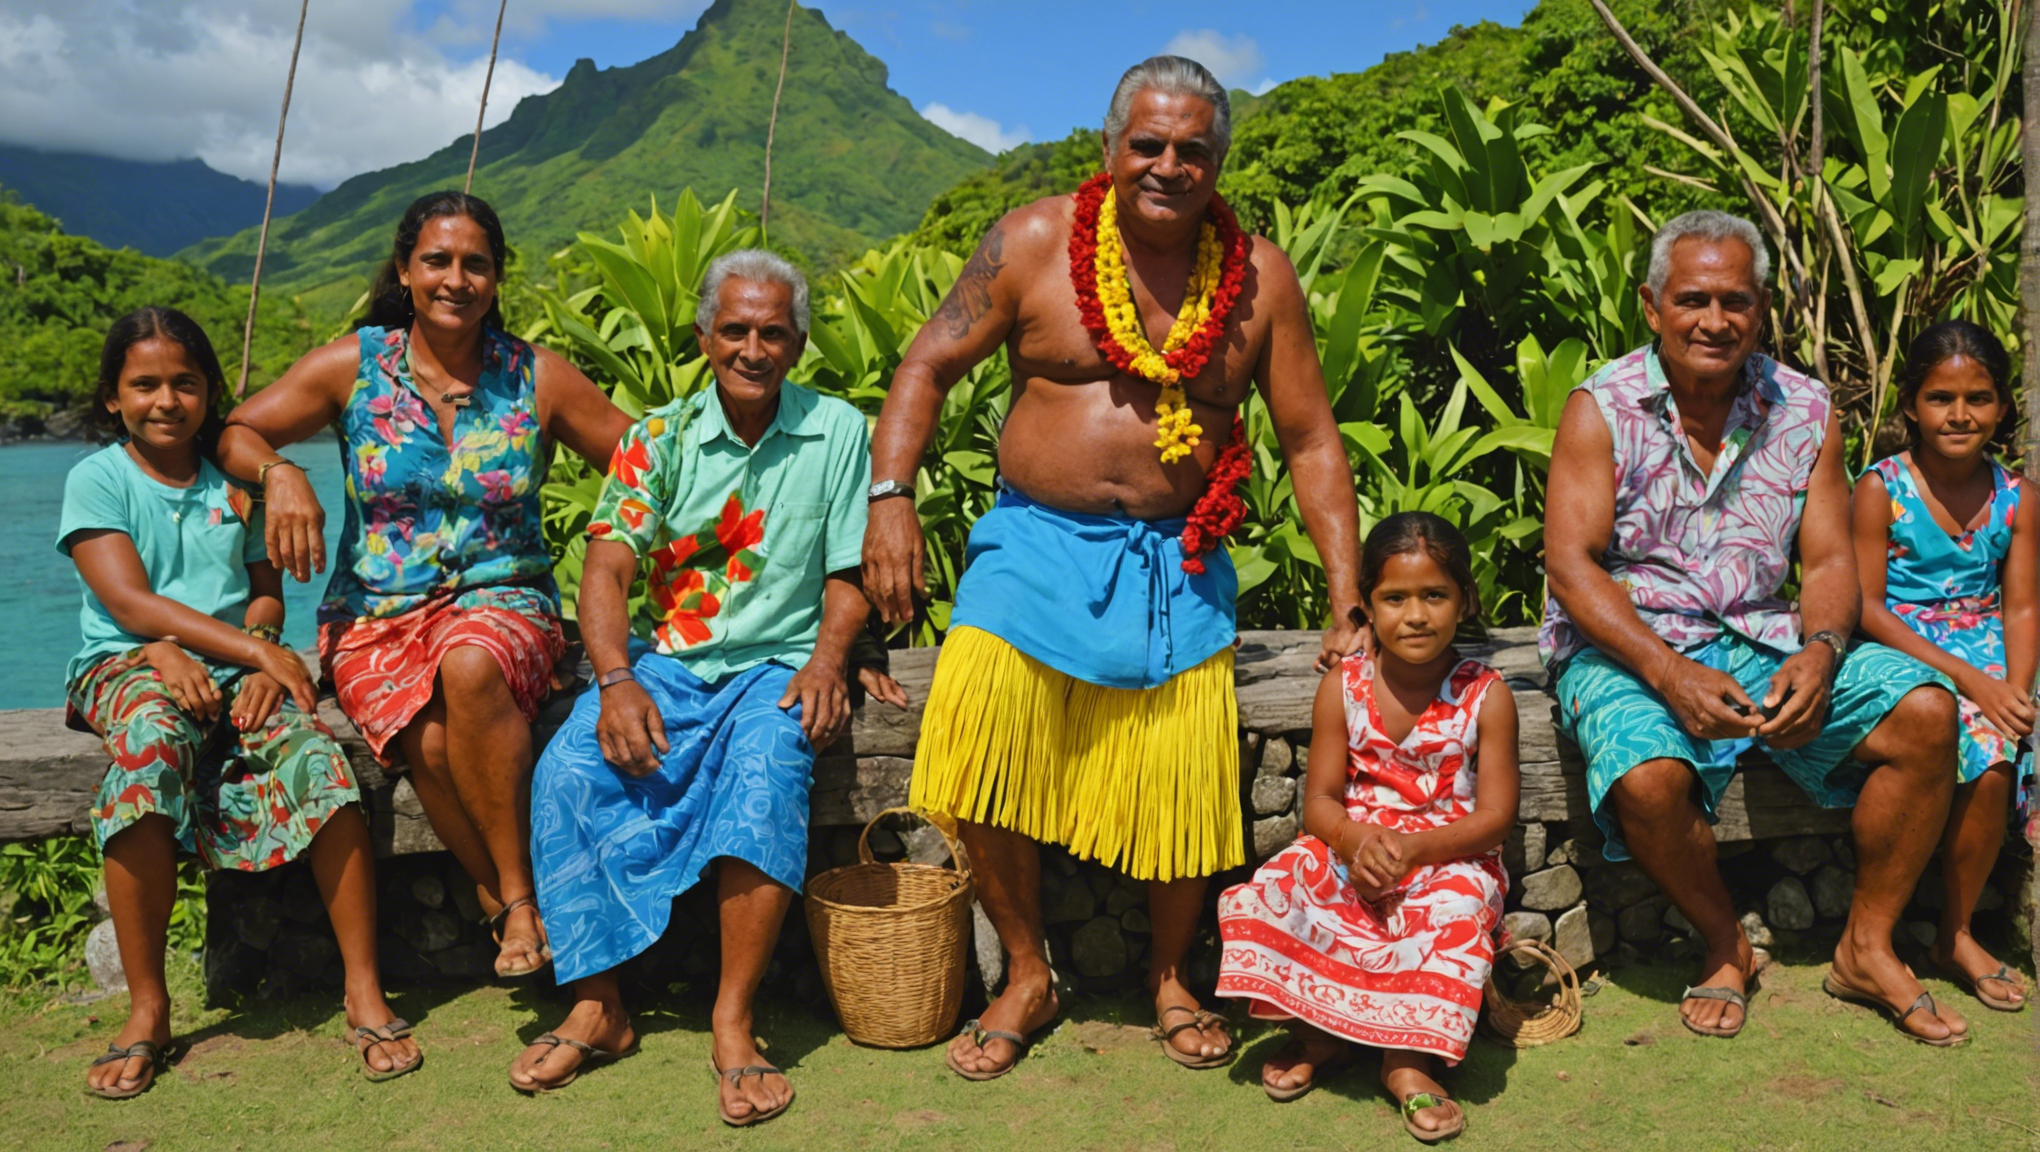 découvrez les trésors artistiques de l'artisanat polynésien de tahiti et plongez-vous dans un monde de créativité et de traditions séculaires.